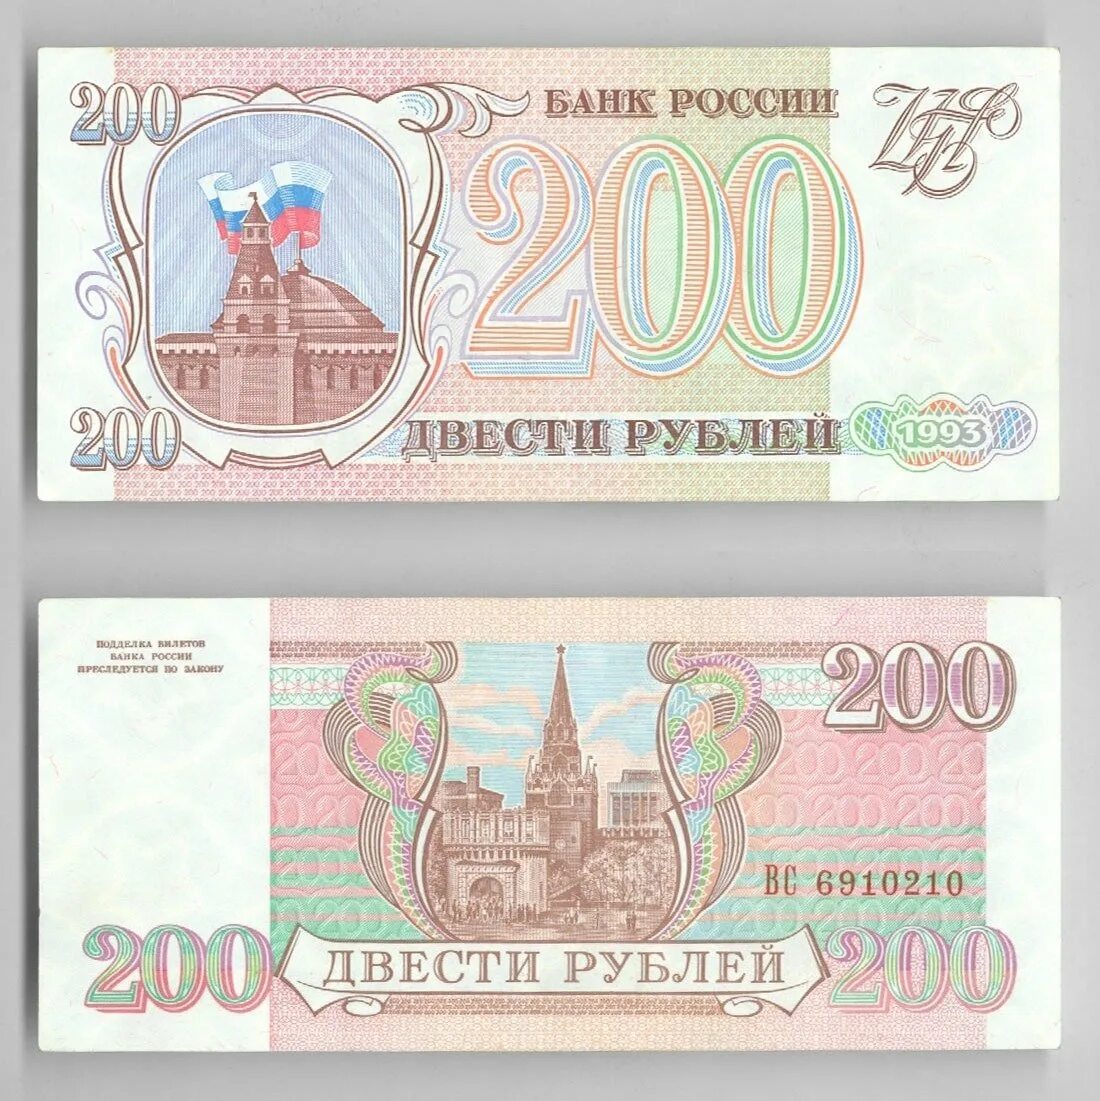 200 в русских рублях. Купюра 200 рублей 1993. Банкнота 200 рублей 1993. 200 Рублей 1993 года. Купюра 200 рублей 1993 года.